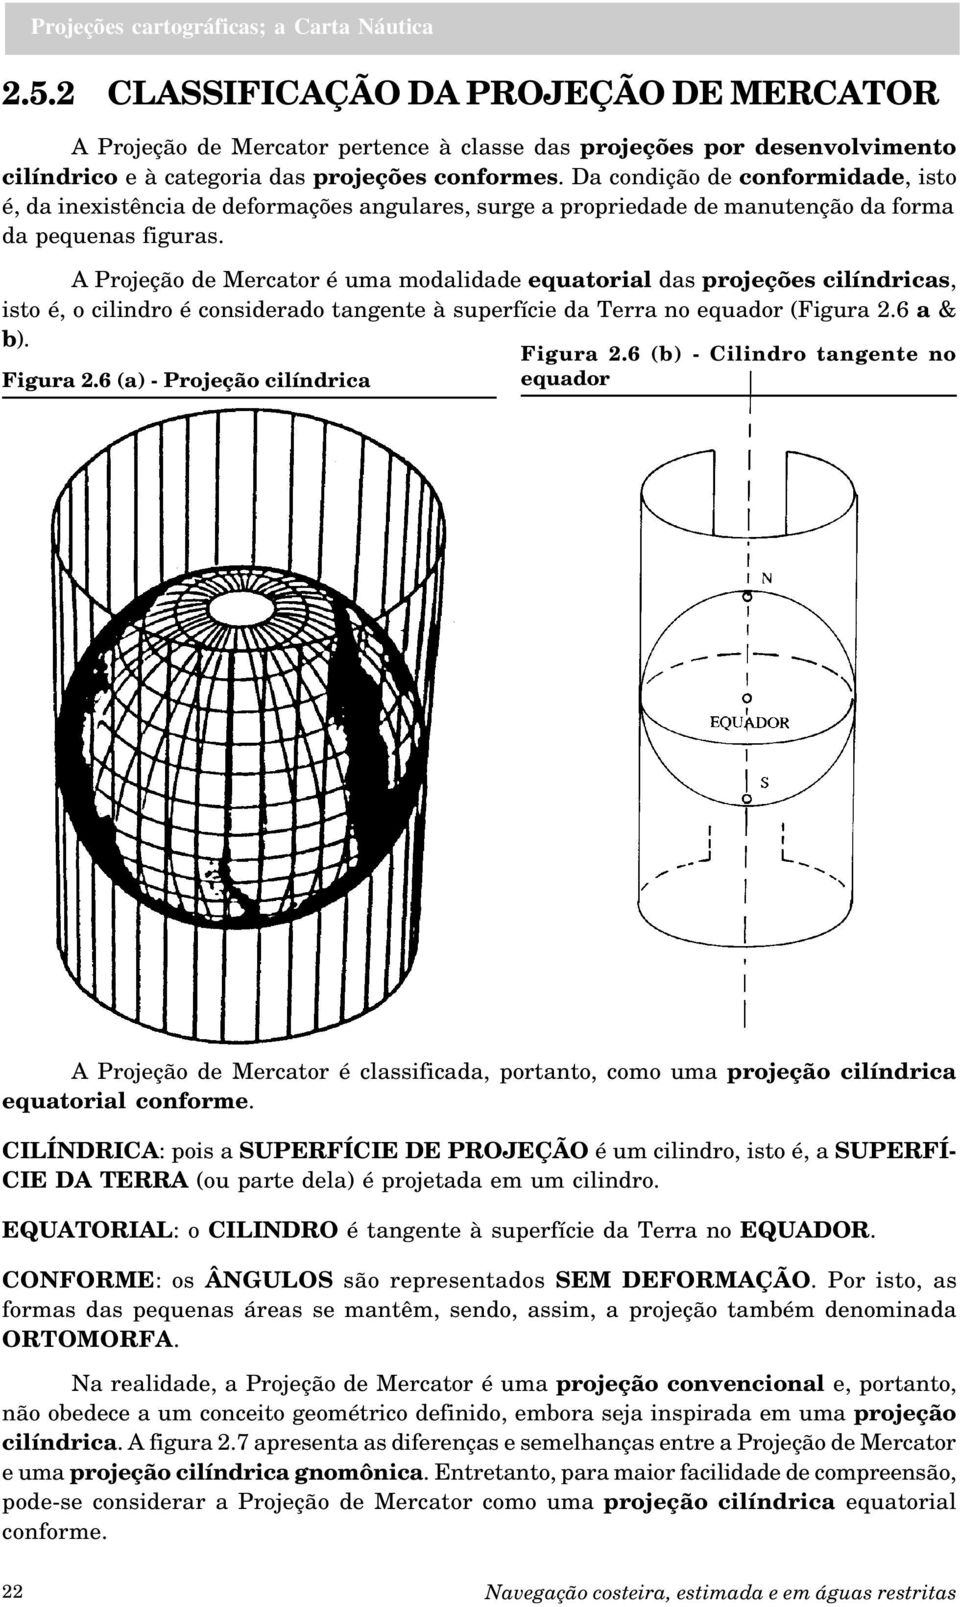 A Projeção de Mercator é uma modalidade equatorial das projeções cilíndricas, isto é, o cilindro é considerado tangente à superfície da Terra no equador (Figura 2.6 a & b). Figura 2.